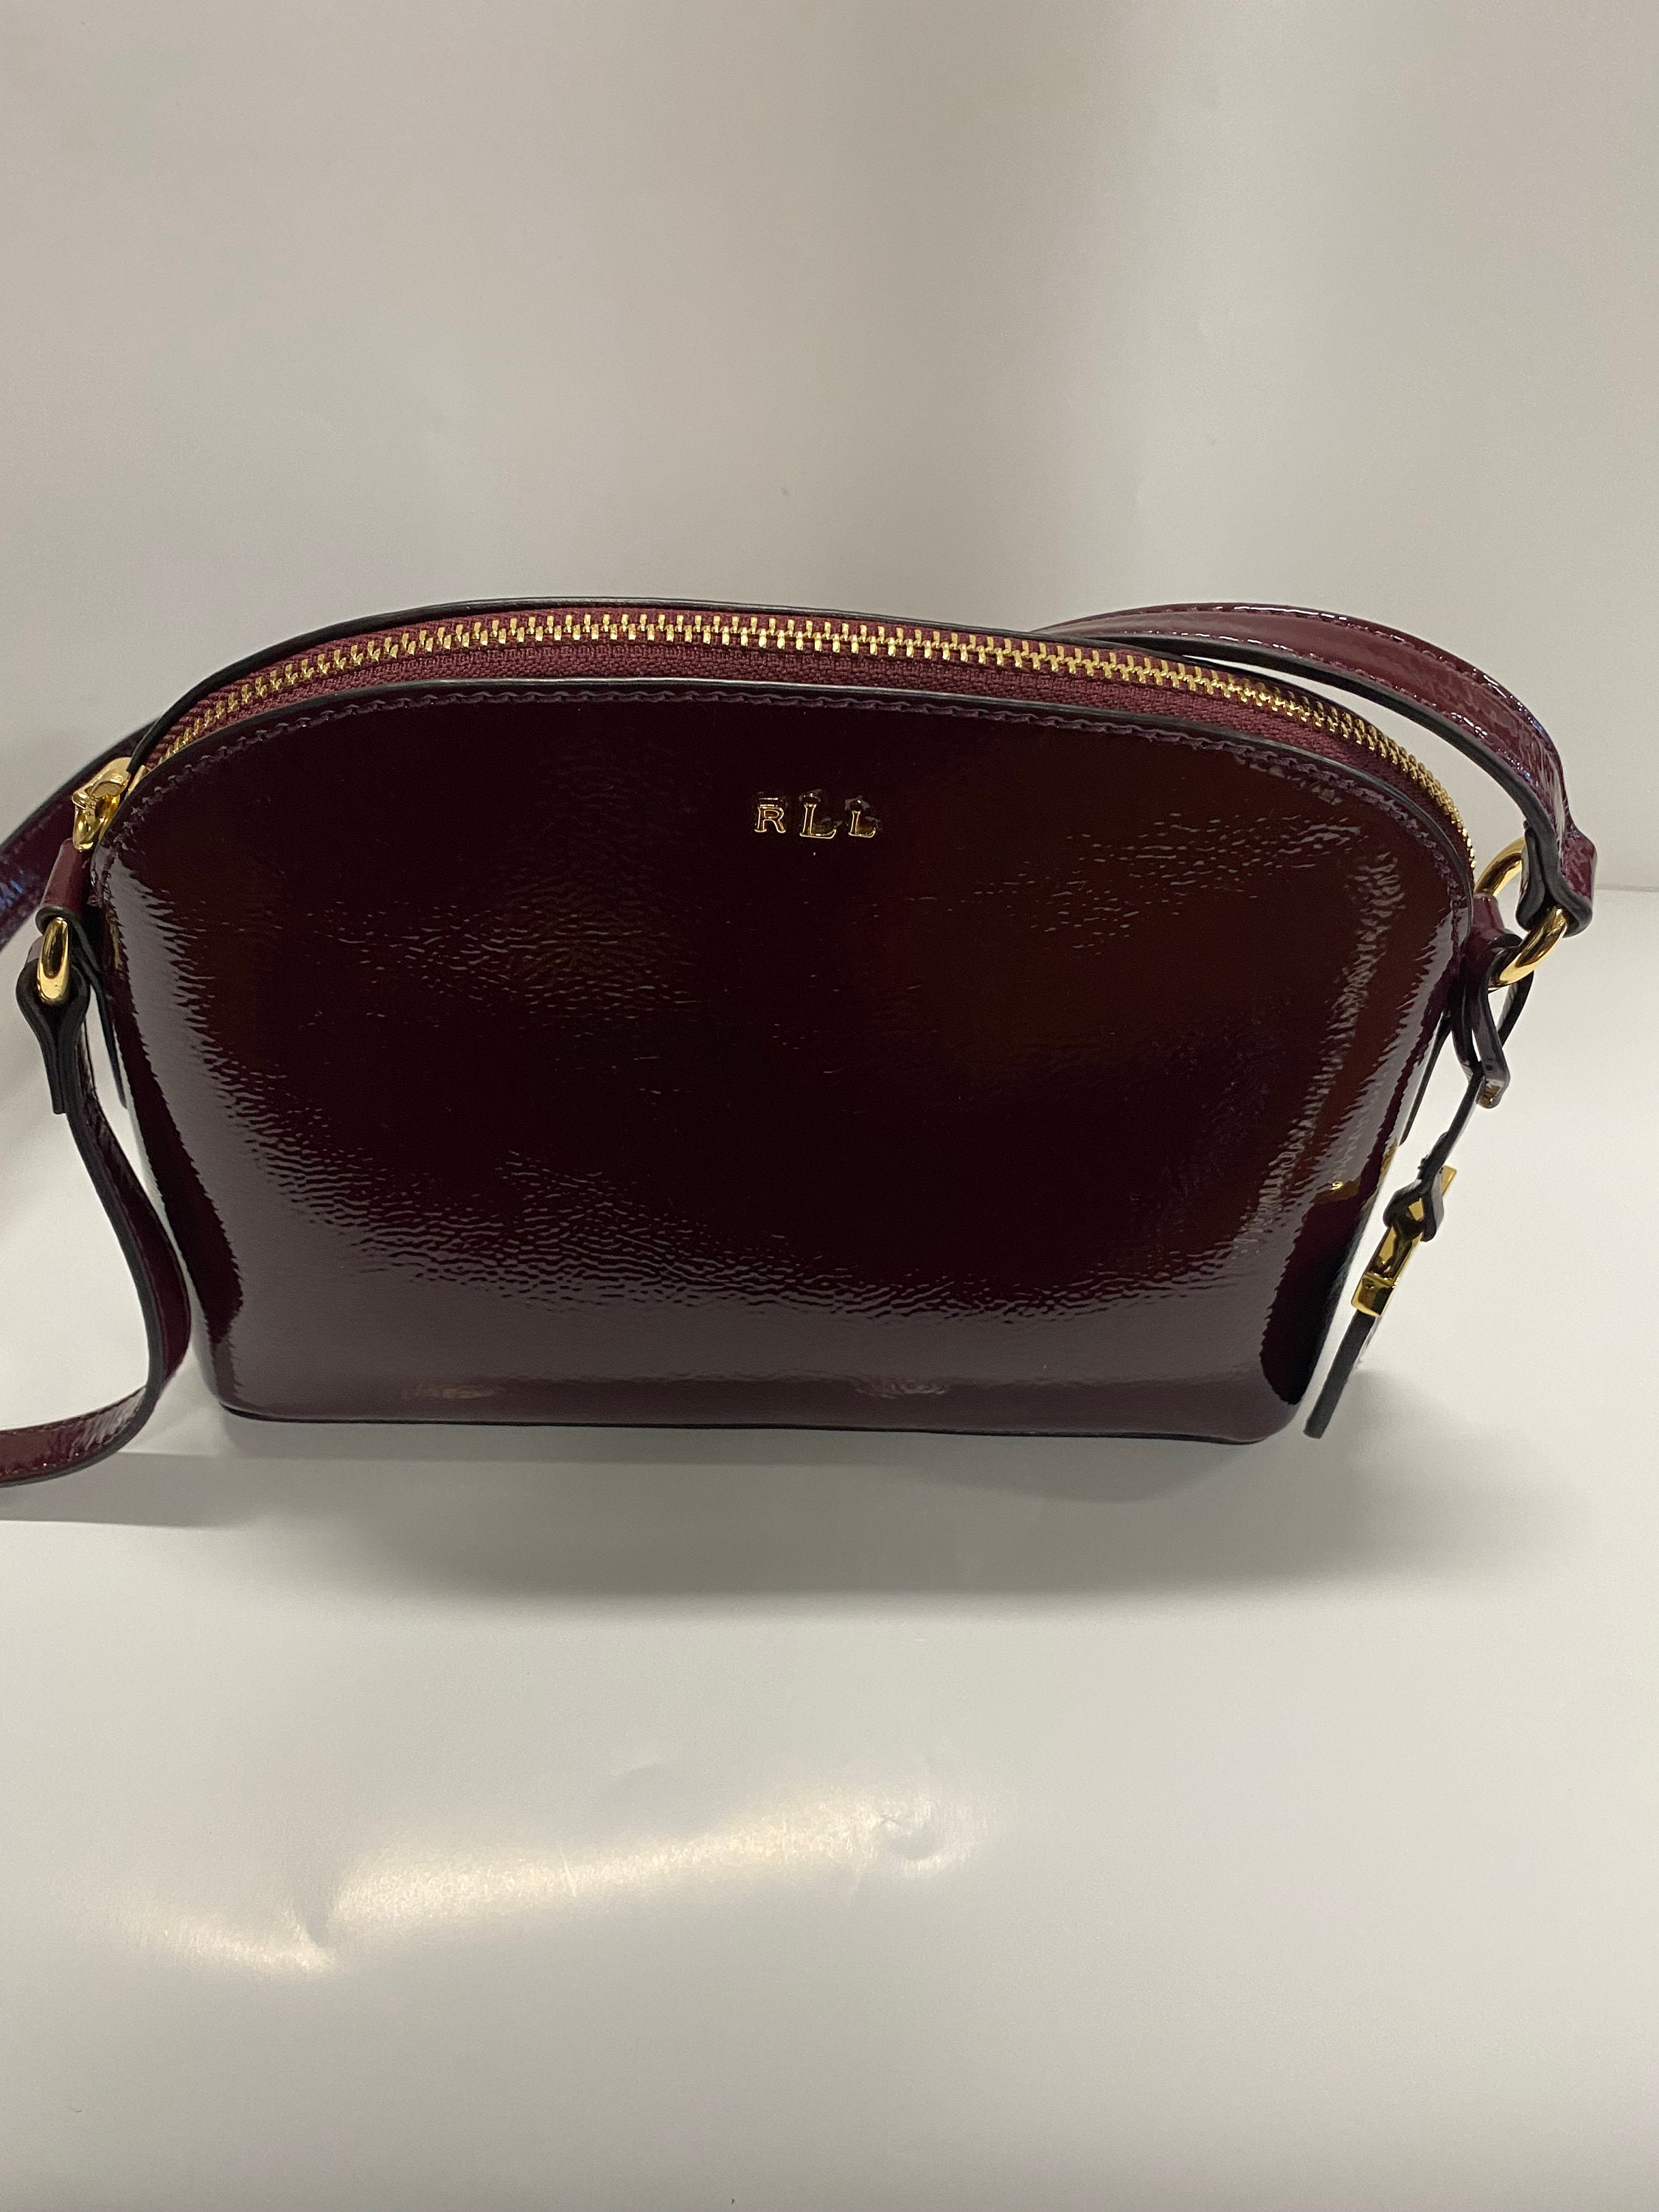 RLL Ralph Lauren | Bags | Ralph Lauren Rll Black Crossbody Leather Purse |  Poshmark